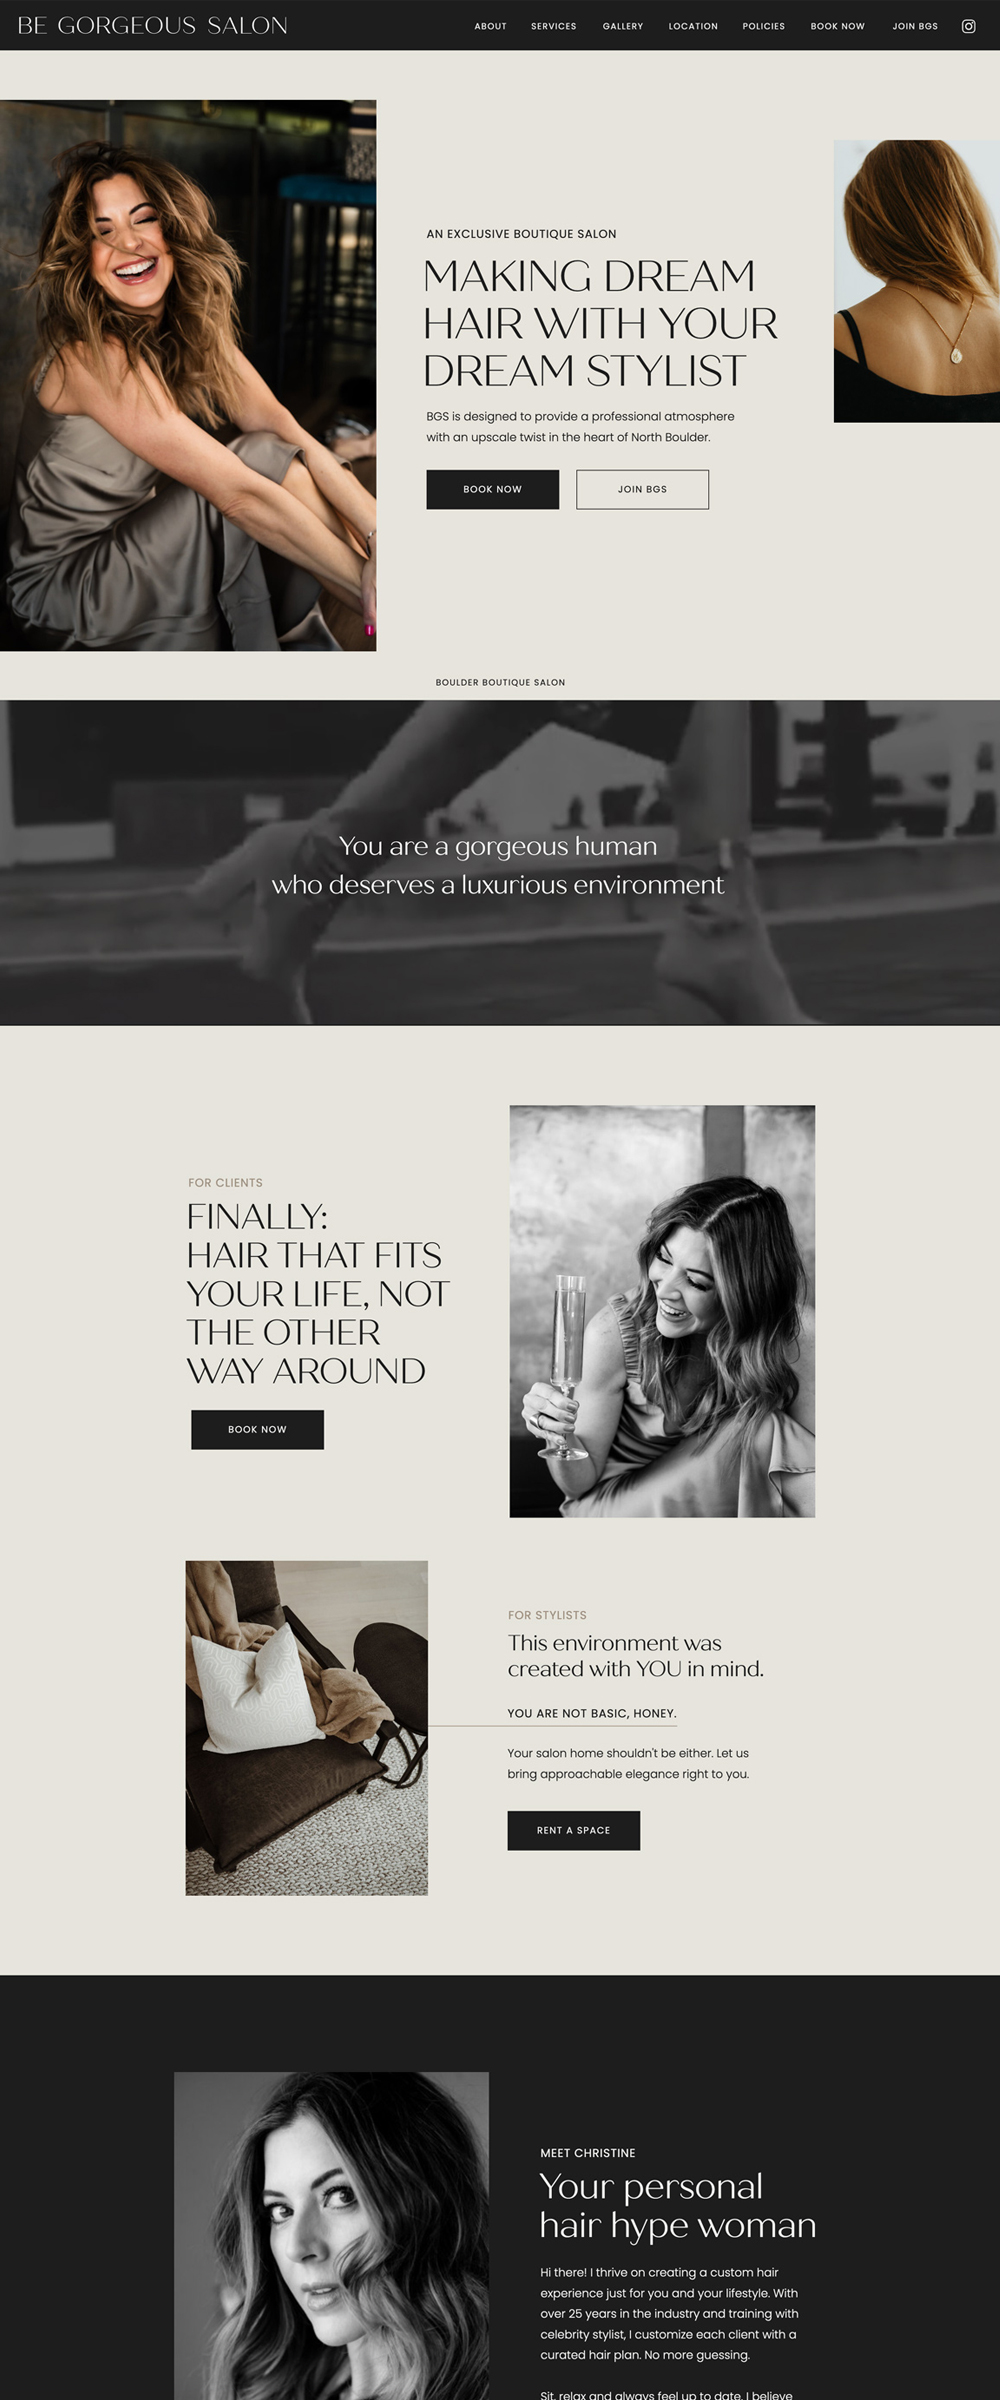 Showit Website Design for a Boutique Salon | Be Gorgeous Salon - by Hey Hello Studio